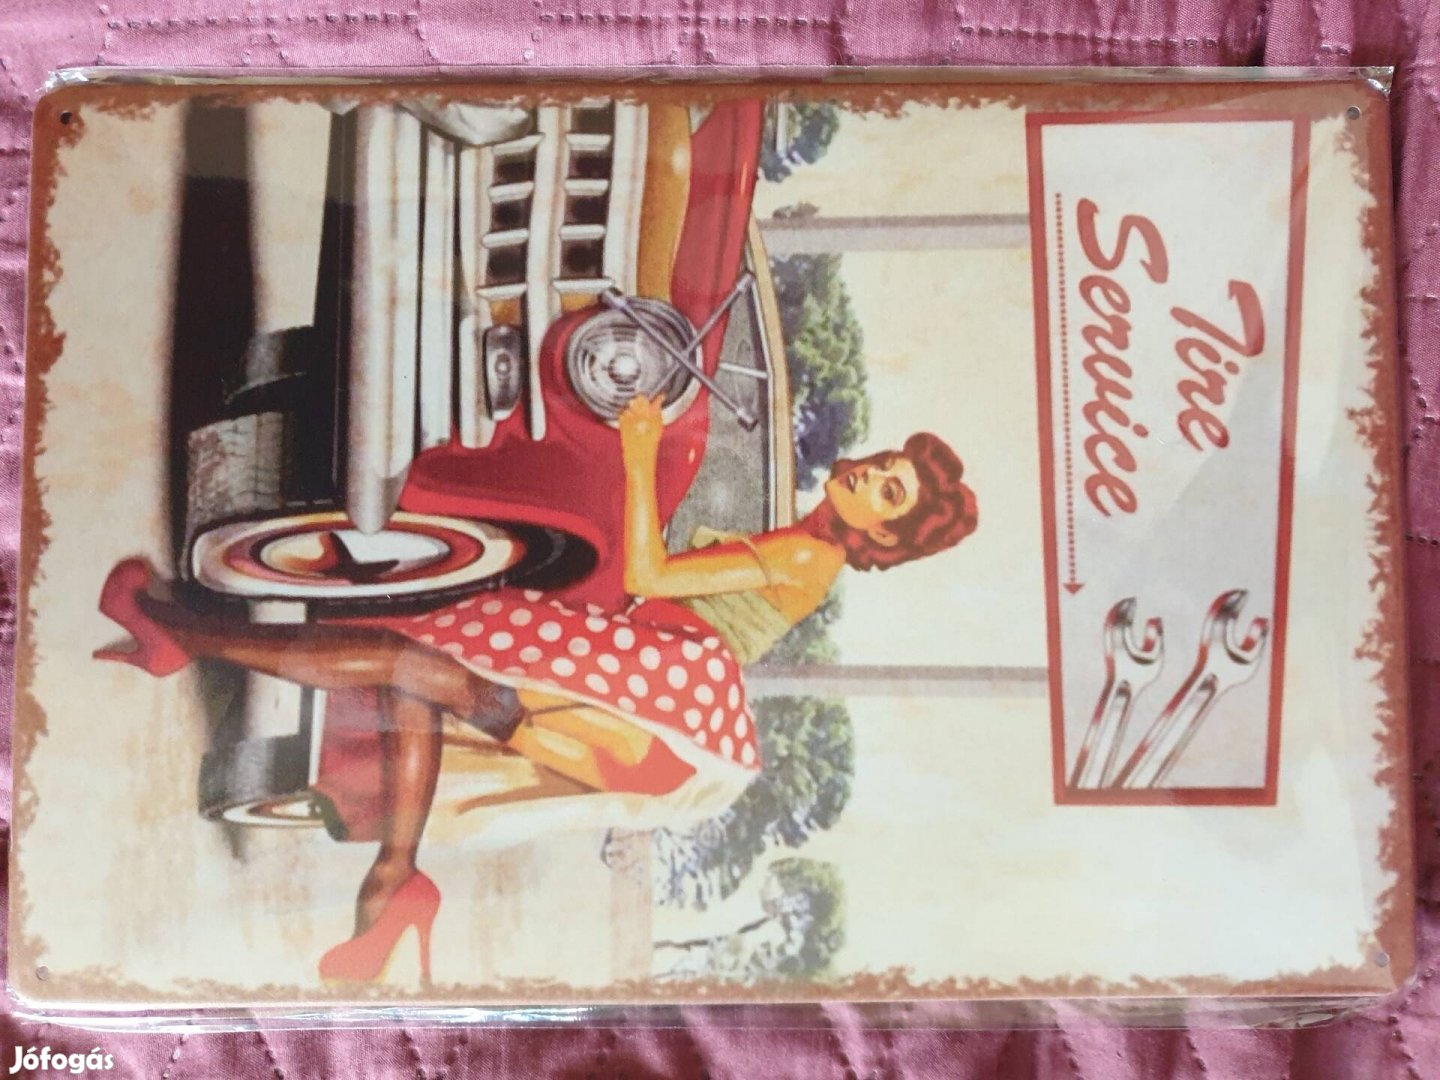 Retró vintage pin up girl fém reklám autó szervíz